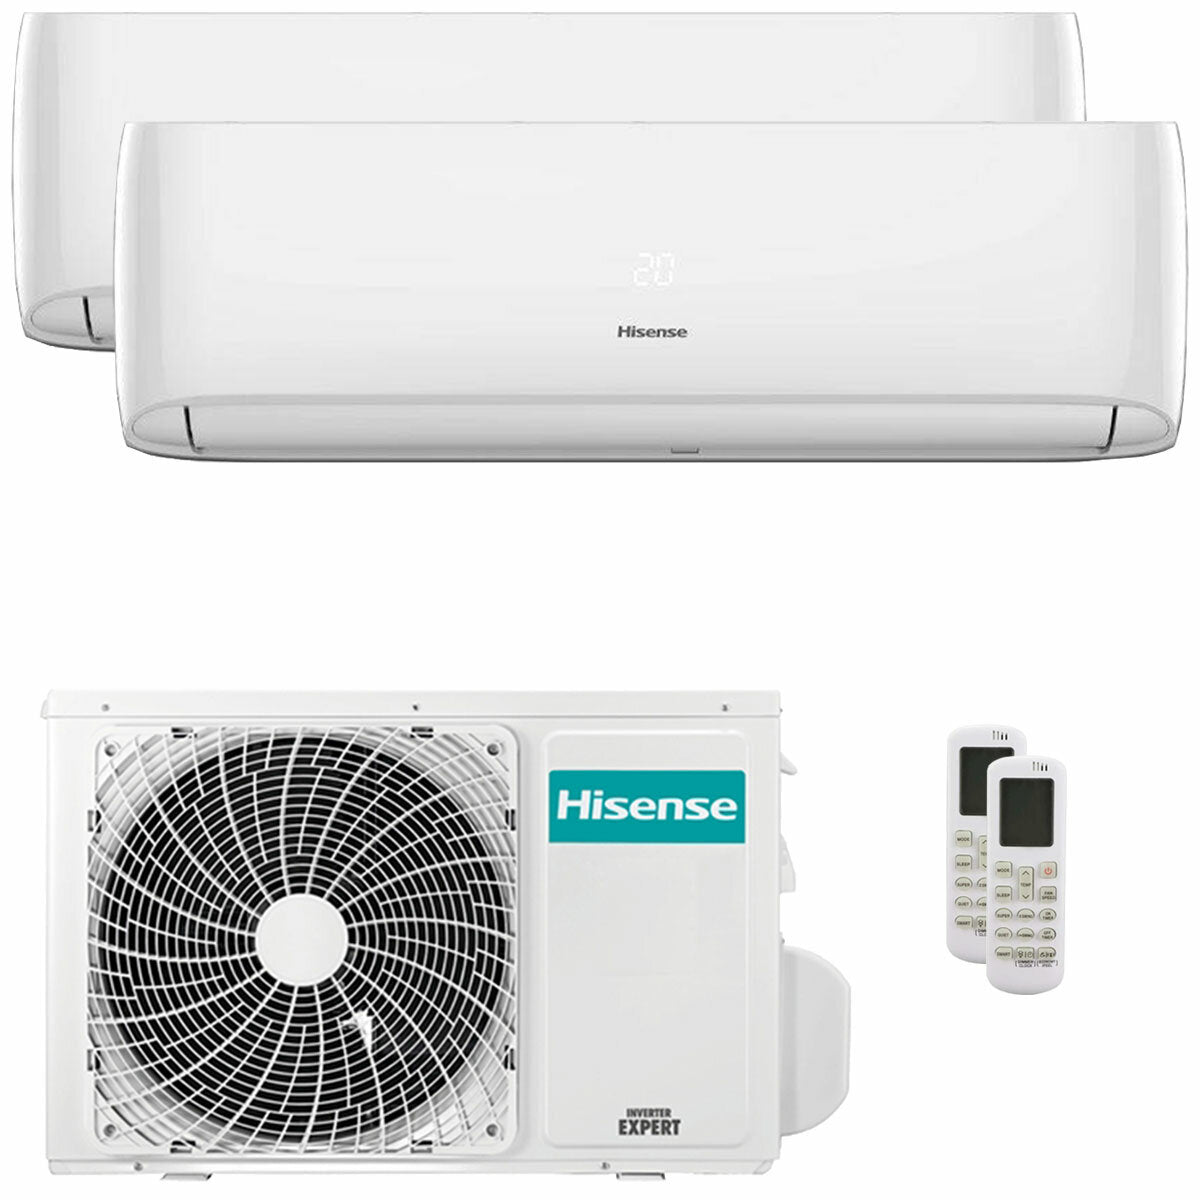 Hisense Hi-Comfort climatiseur double split 9000+12000 BTU onduleur A++ wifi unité extérieure 5,5 kW